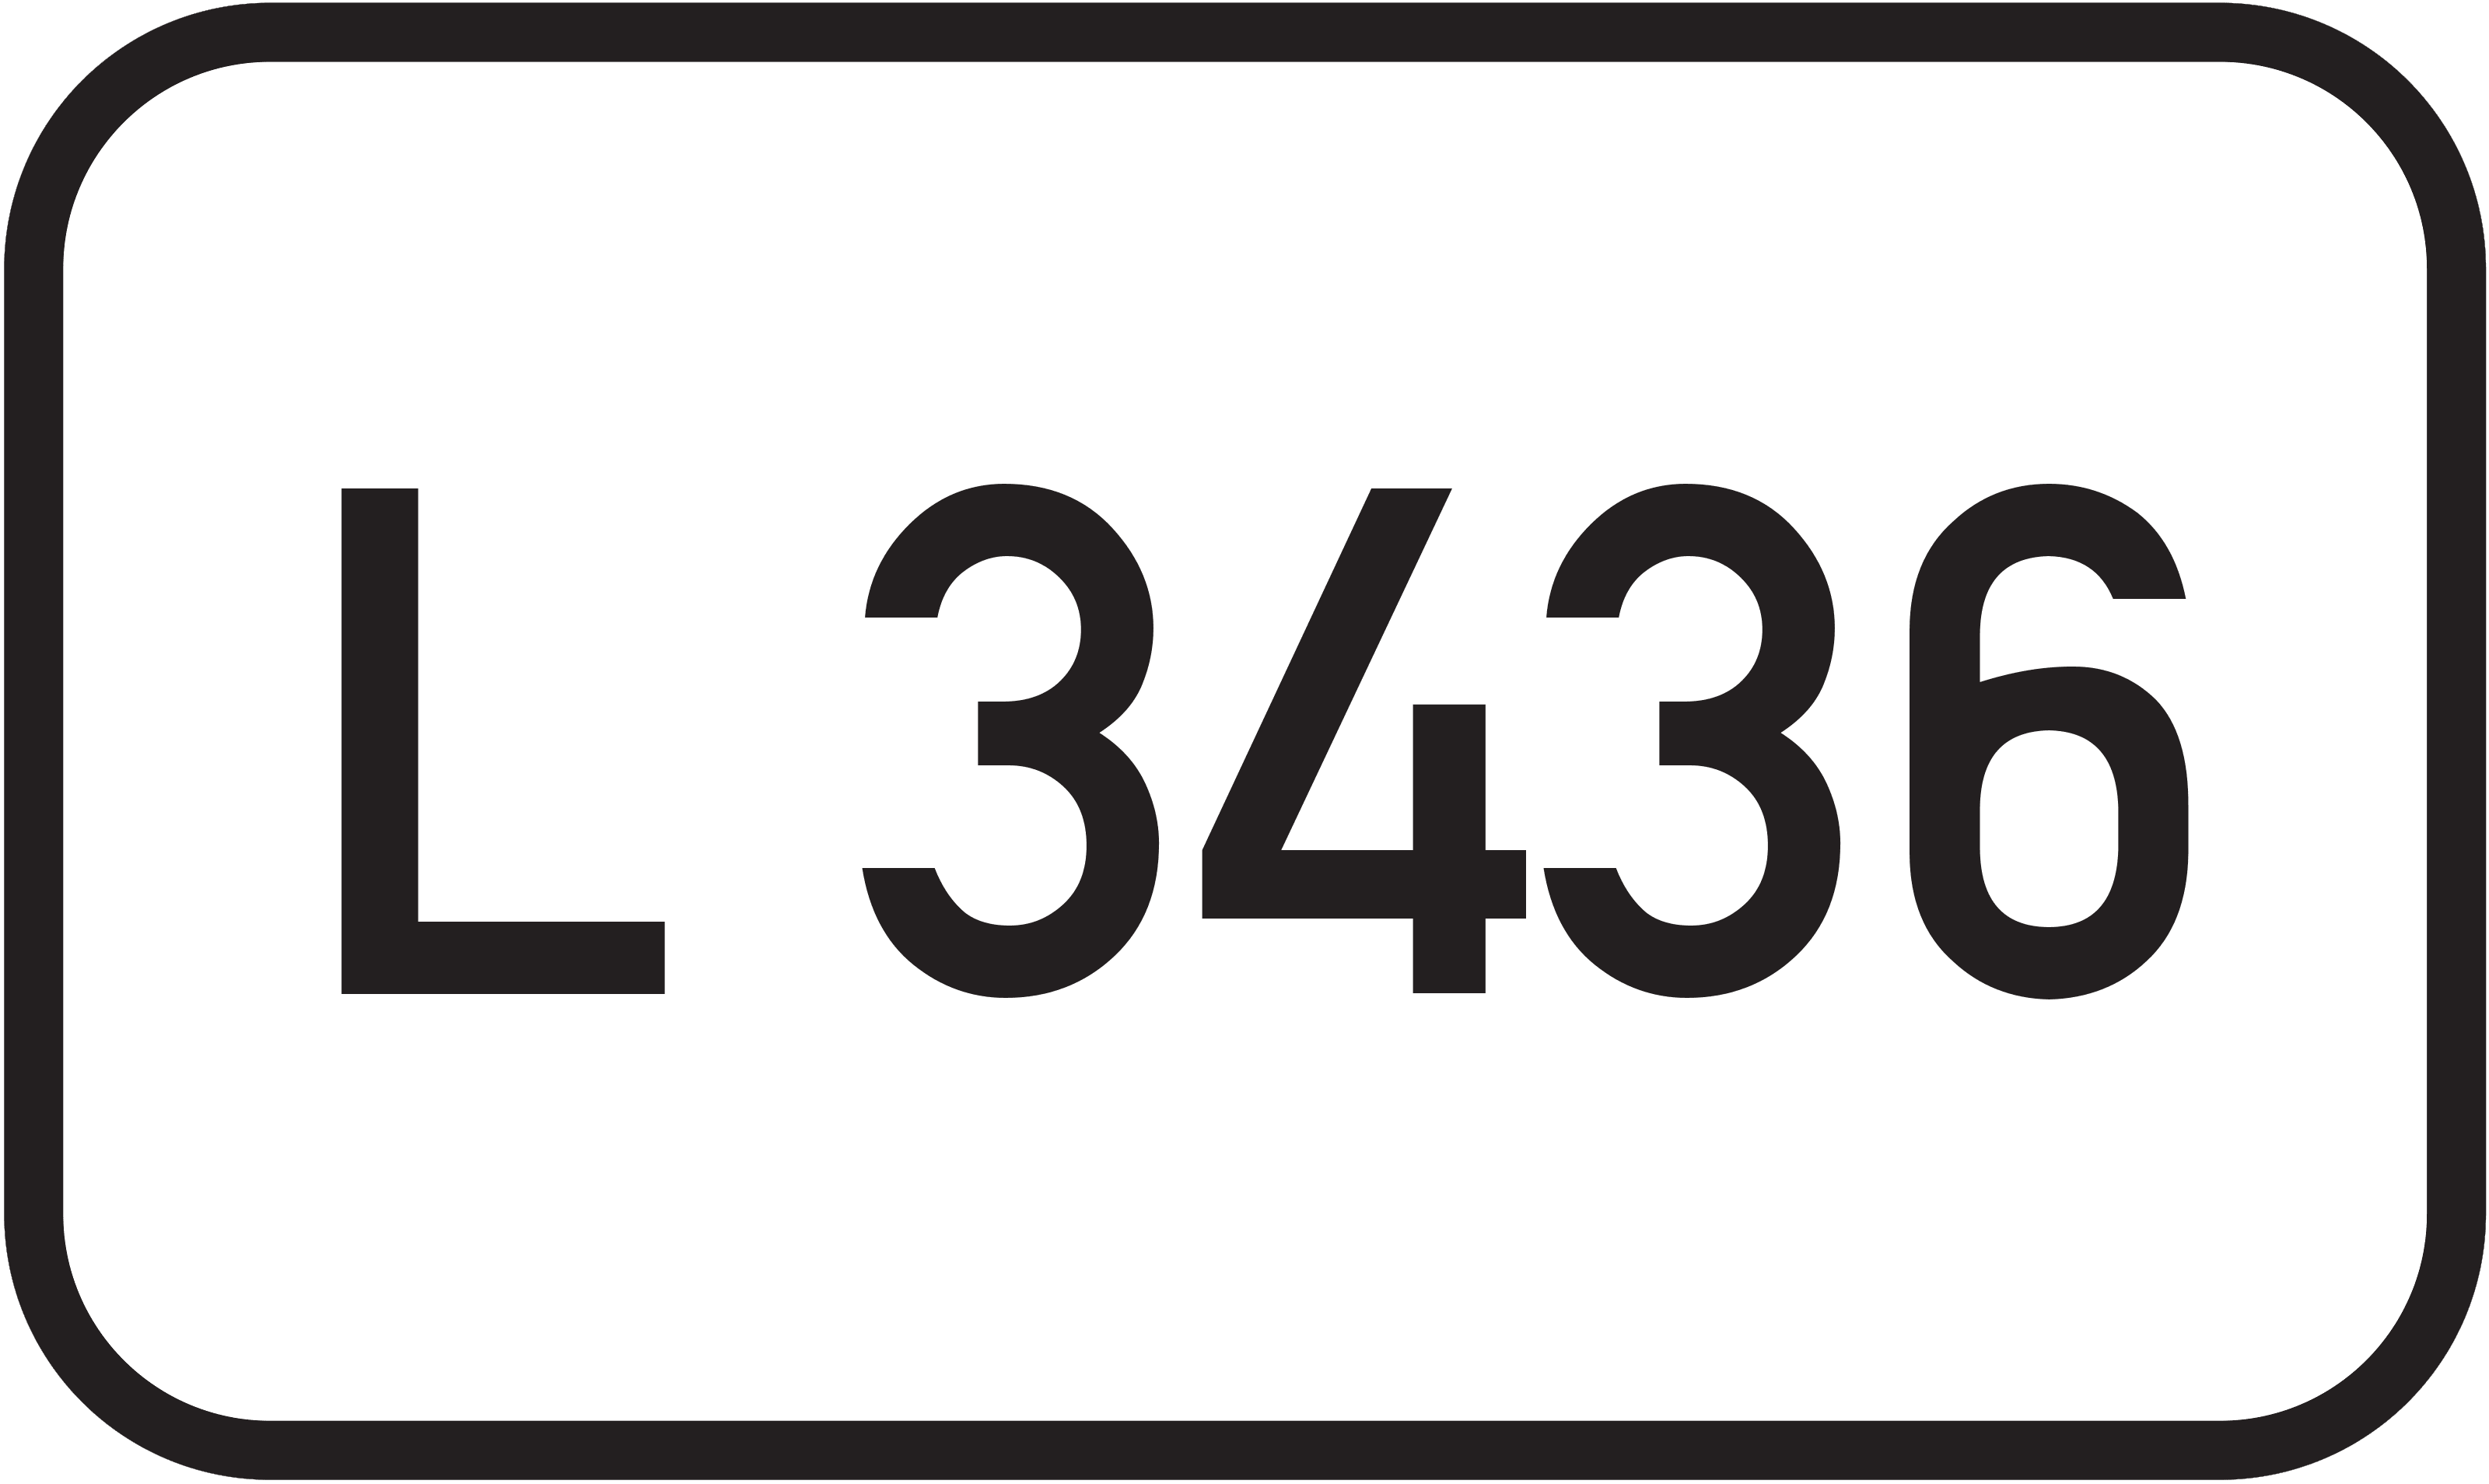 Landesstraße L 3436